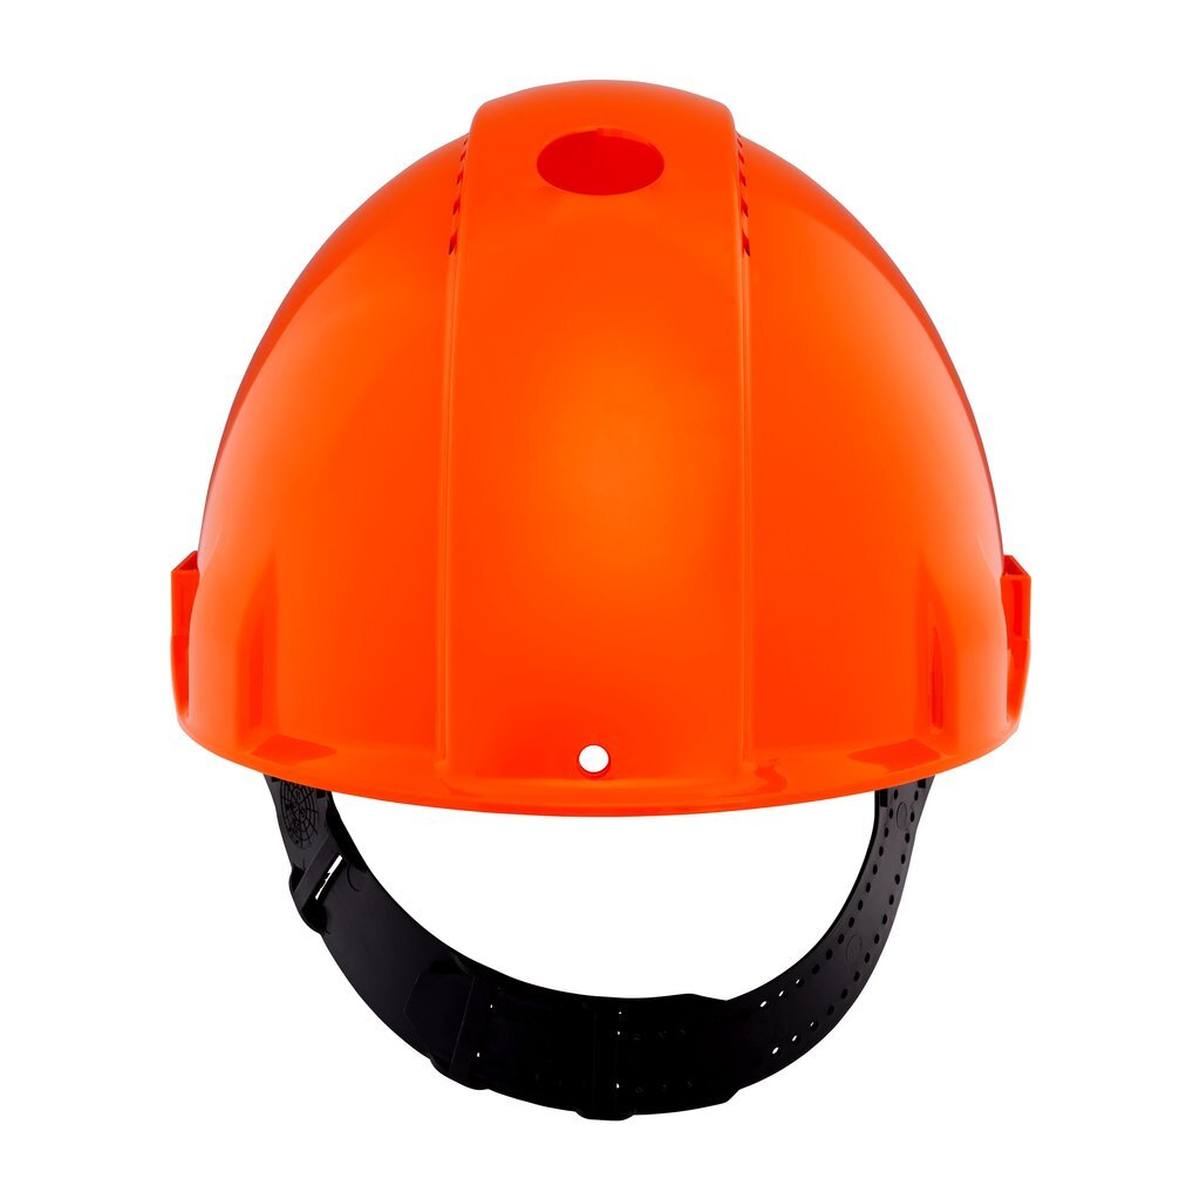 3M Casco de seguridad G3000 G30CUO de color naranja, ventilado, con uvicator, pinlock y banda de sudor de plástico